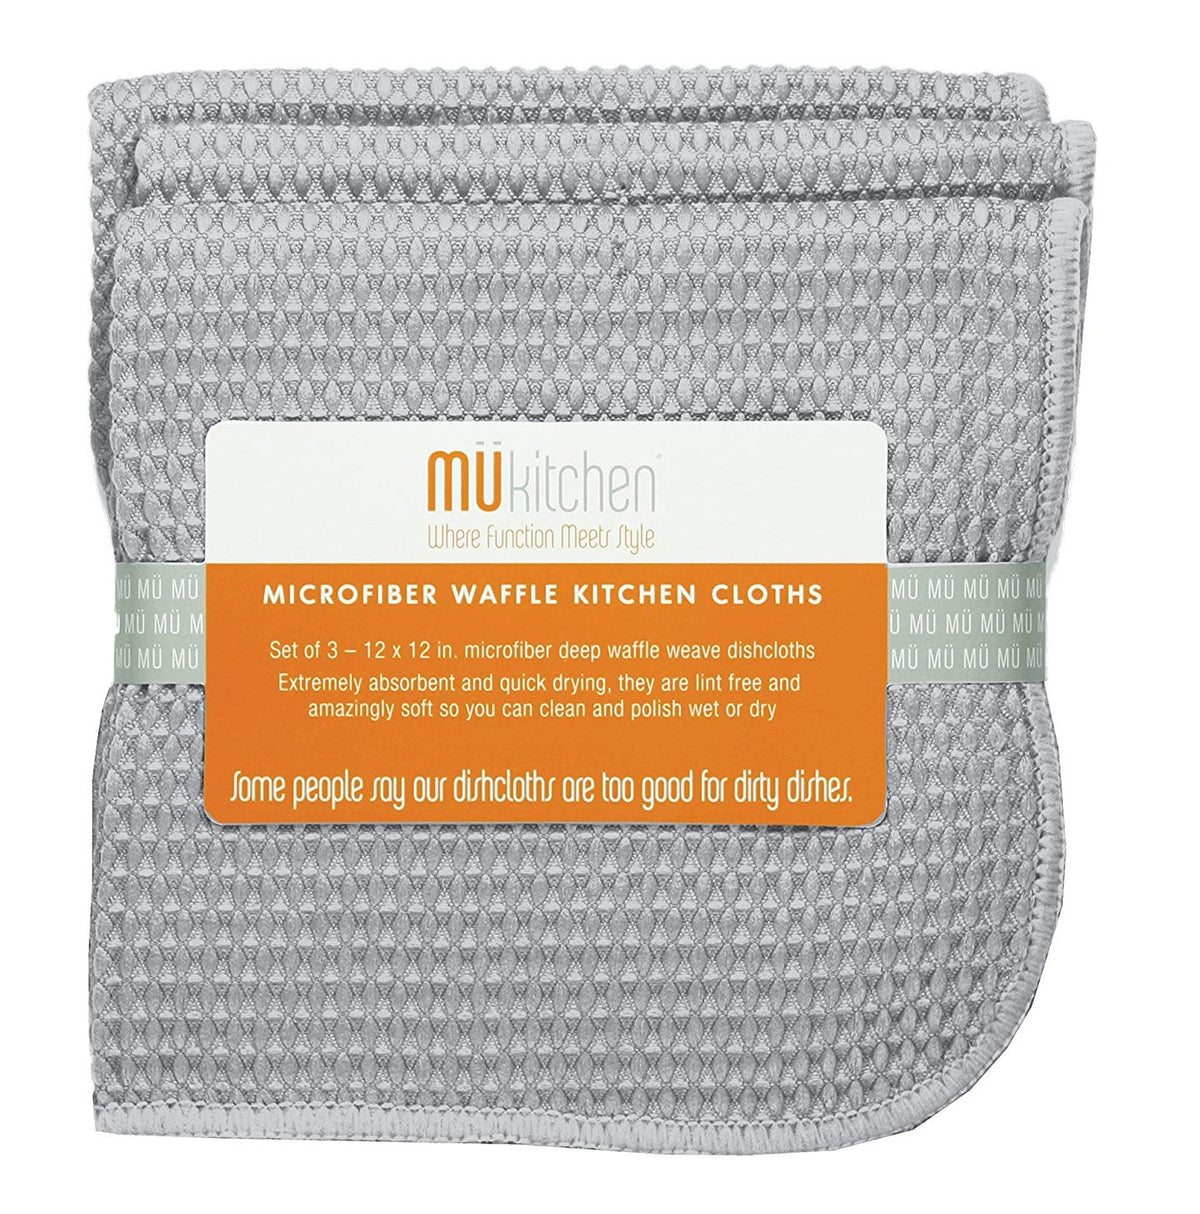 MUkitchen 6638-1629 Microfiber Waffle Dishcloth, Storm Gray